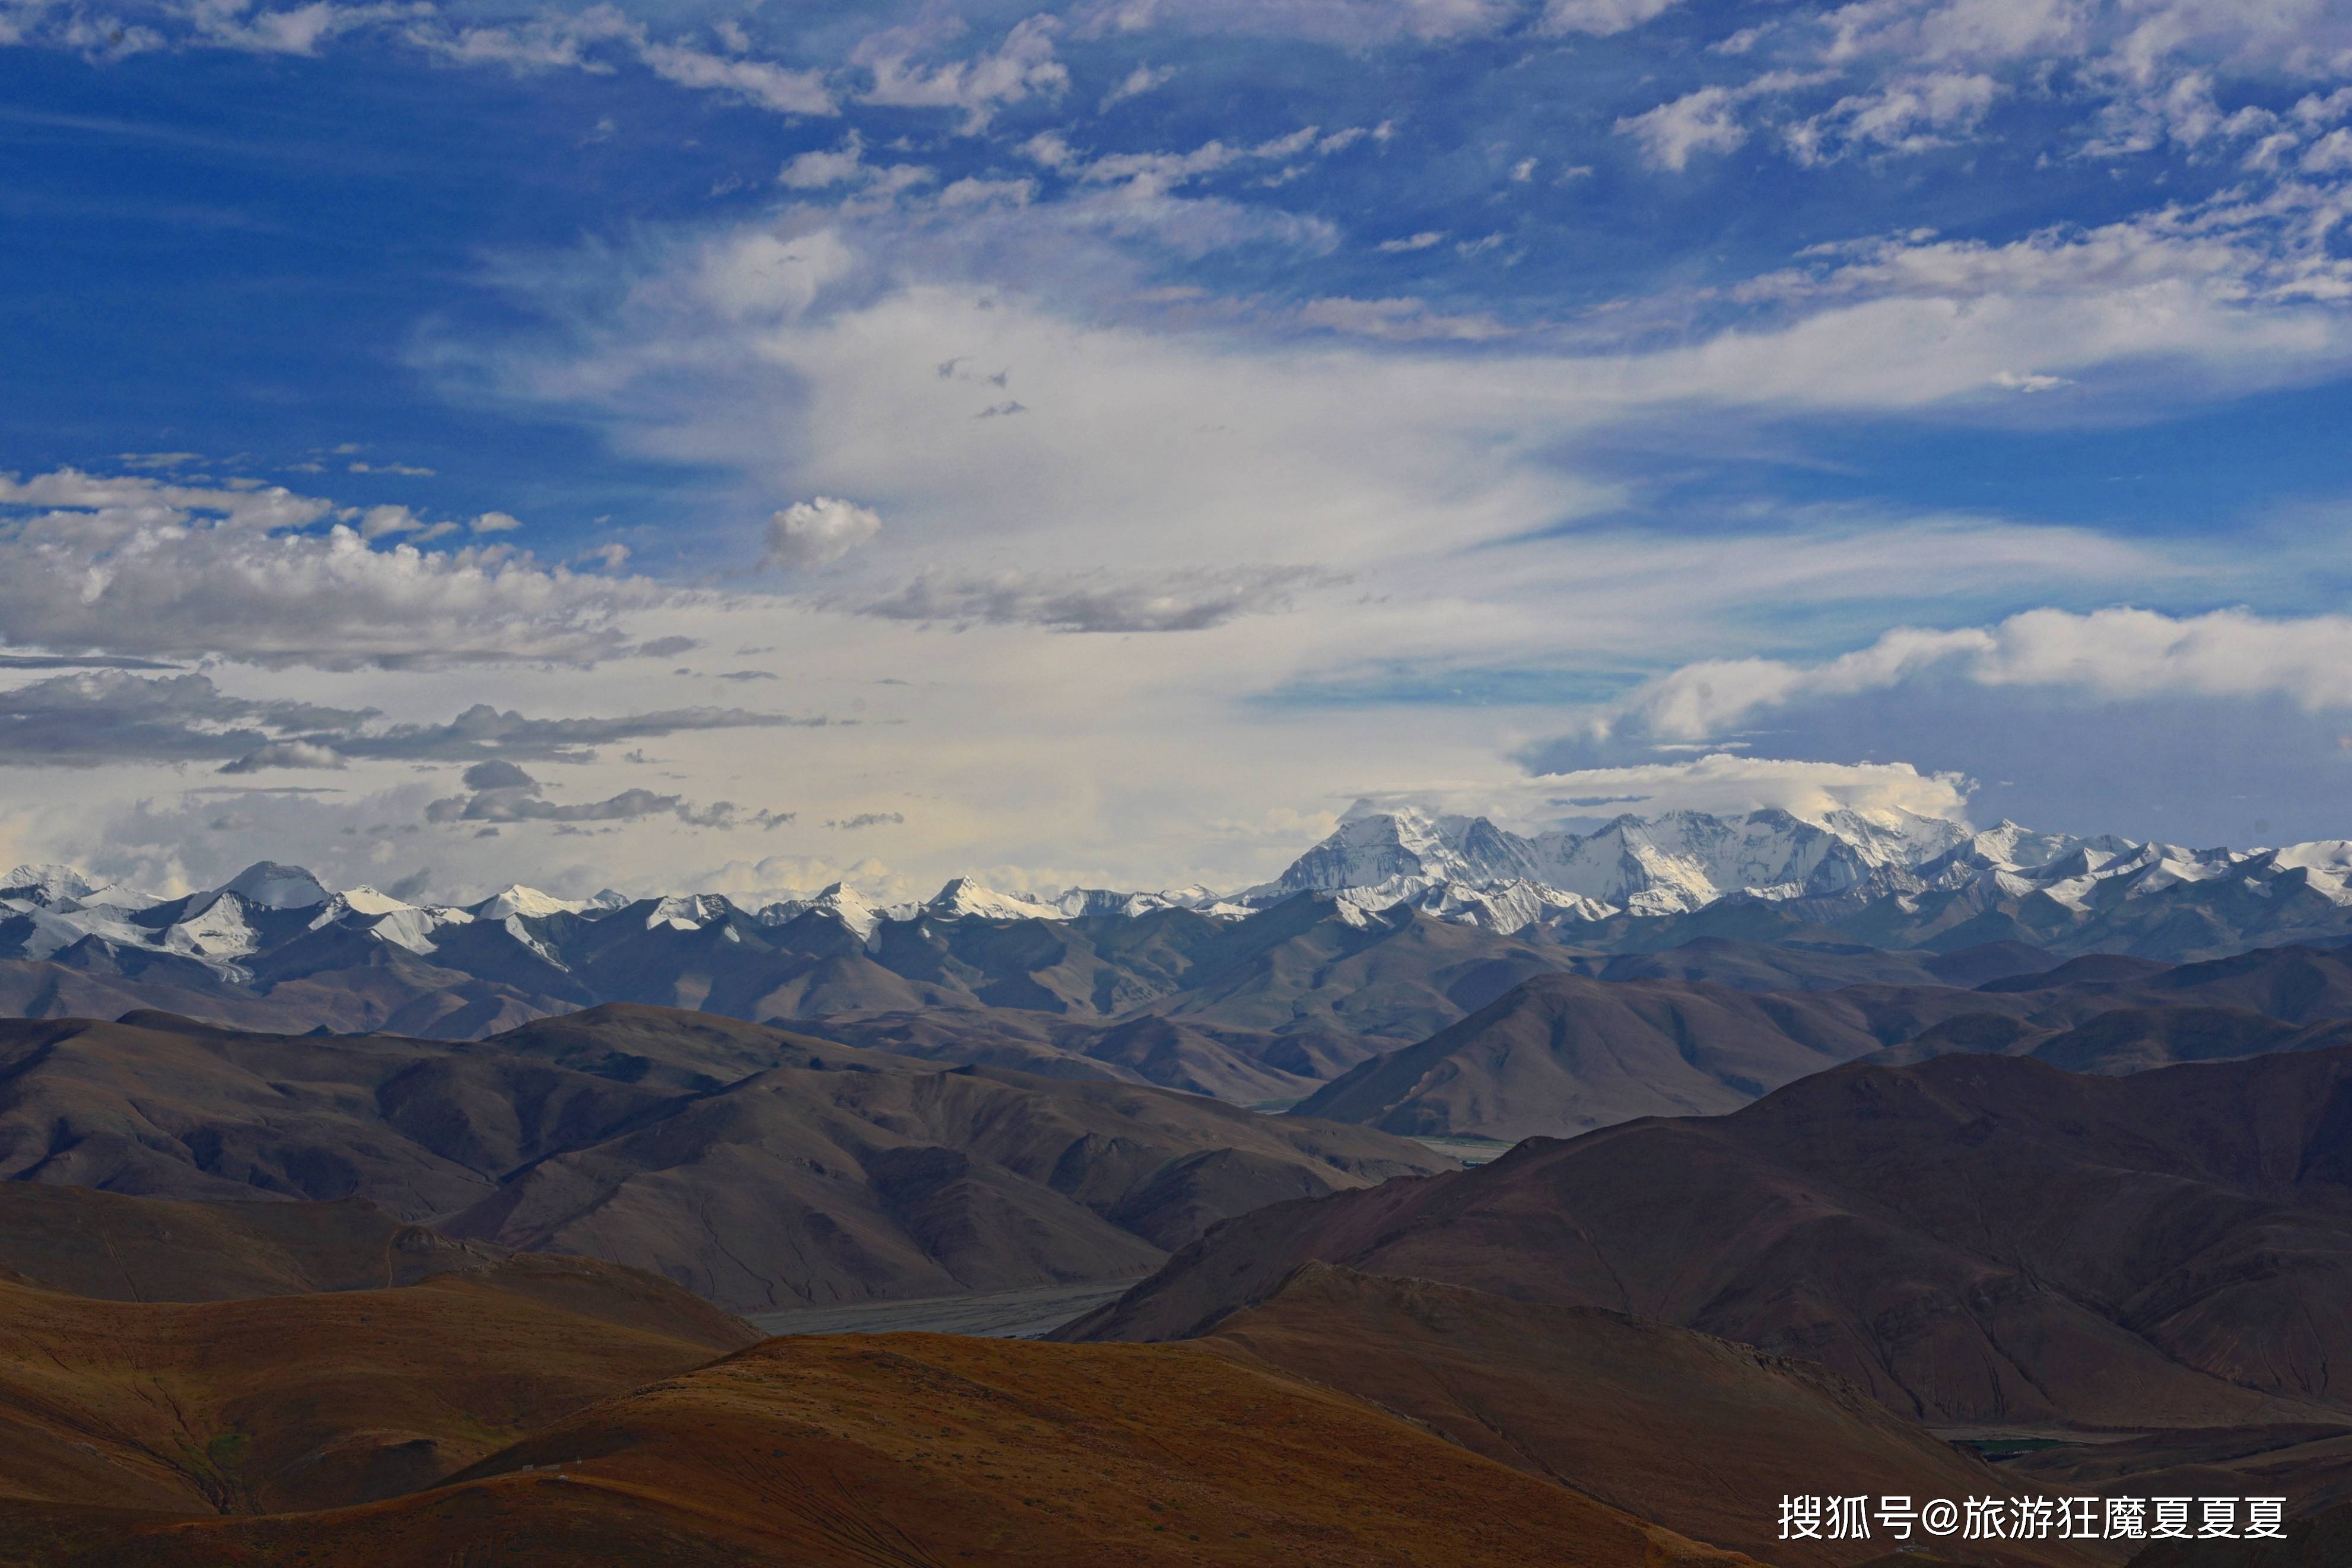 自治区与尼泊尔王国交界处,在这里不仅能看到世界最高峰珠穆朗玛峰,更